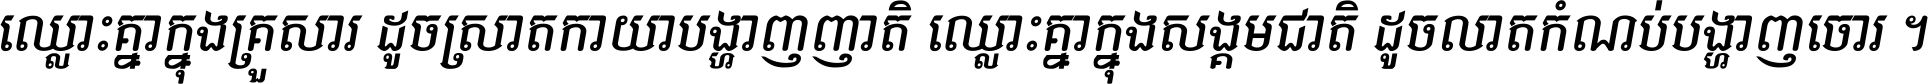 Kh Baphnom 09 Teak-Sokna Italic